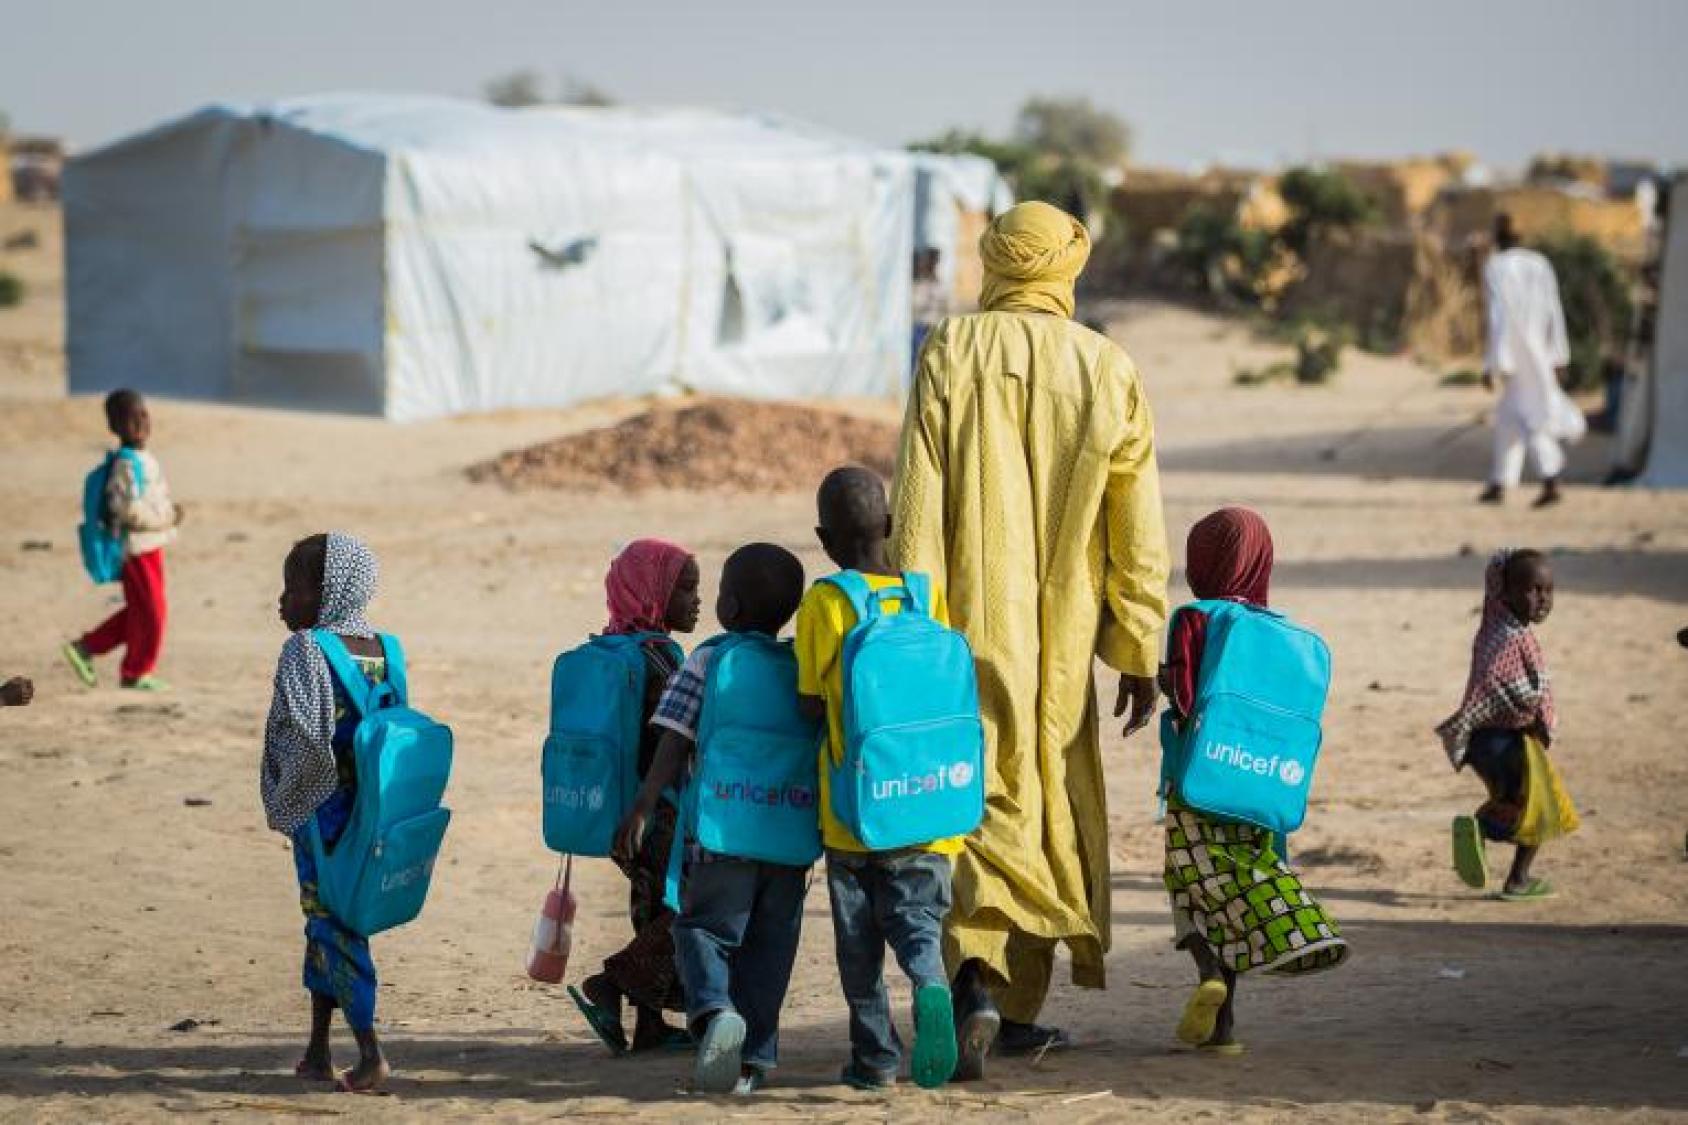 مجموعة من الأطفال الصغار يحملون حقائب ظهر زرقاء خاصة باليونيسف وهم يمشون مع شخص بالغ بالقرب من الخيم.